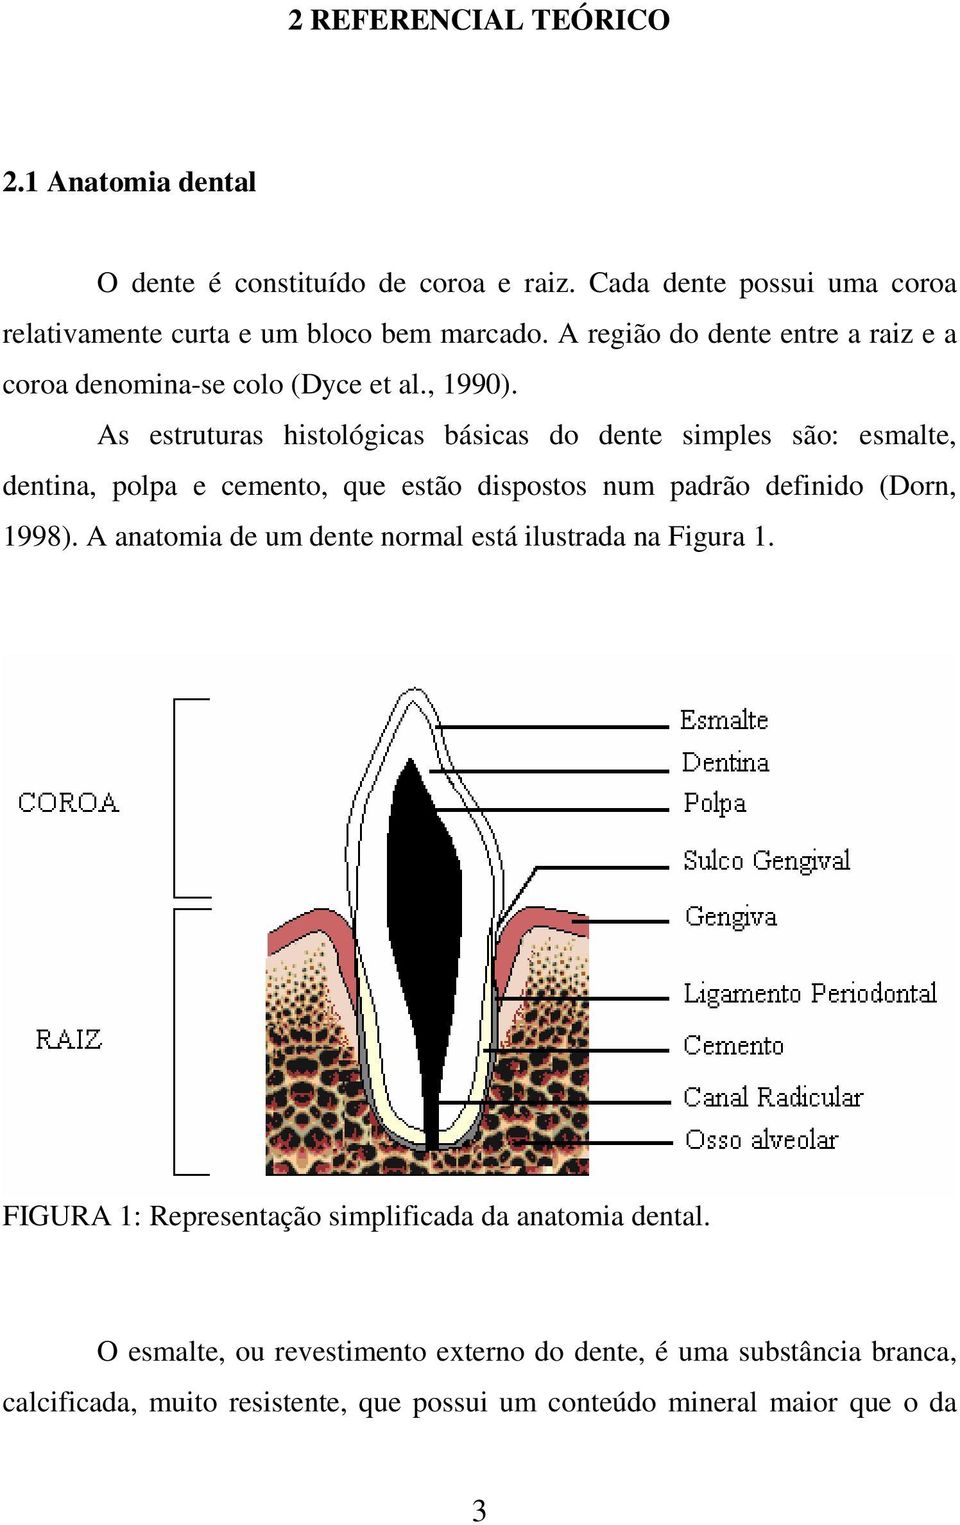 As estruturas histológicas básicas do dente simples são: esmalte, dentina, polpa e cemento, que estão dispostos num padrão definido (Dorn, 1998).